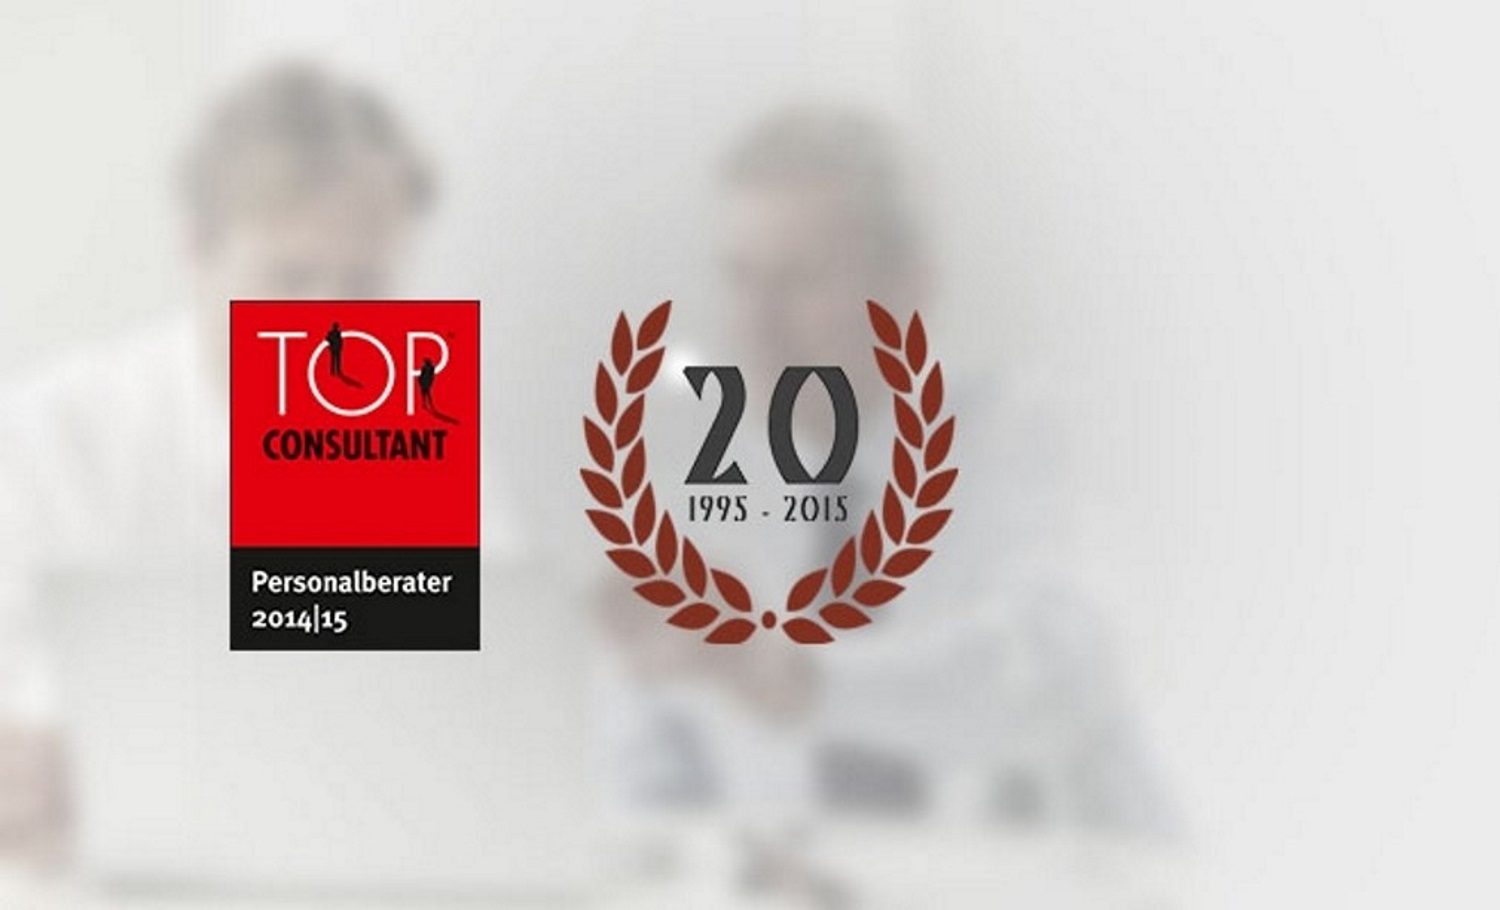 Hettl Consult Auszeichnung Top Consultant Personalberater 2014 2015 1995 2015 20 Jahre Vertrauen